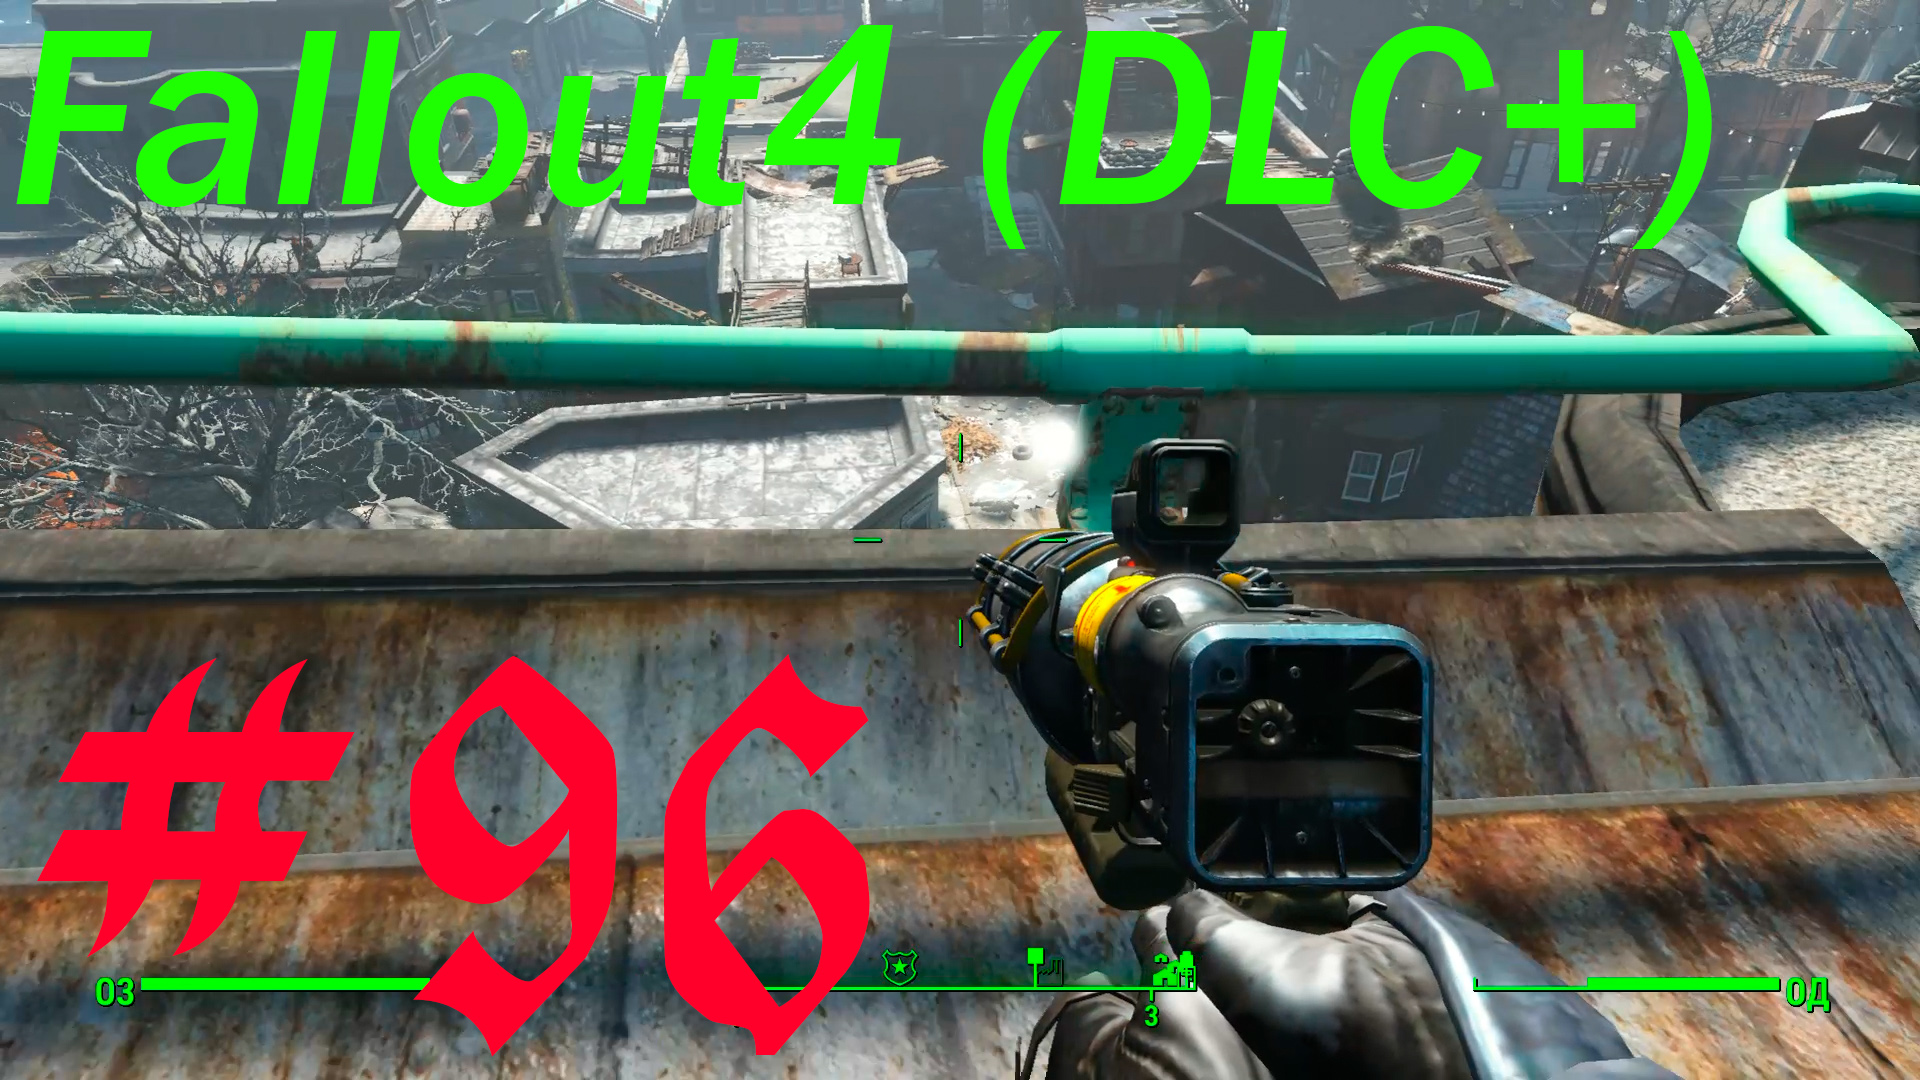 Fallout 4 + DLC, прохождение, часть 96